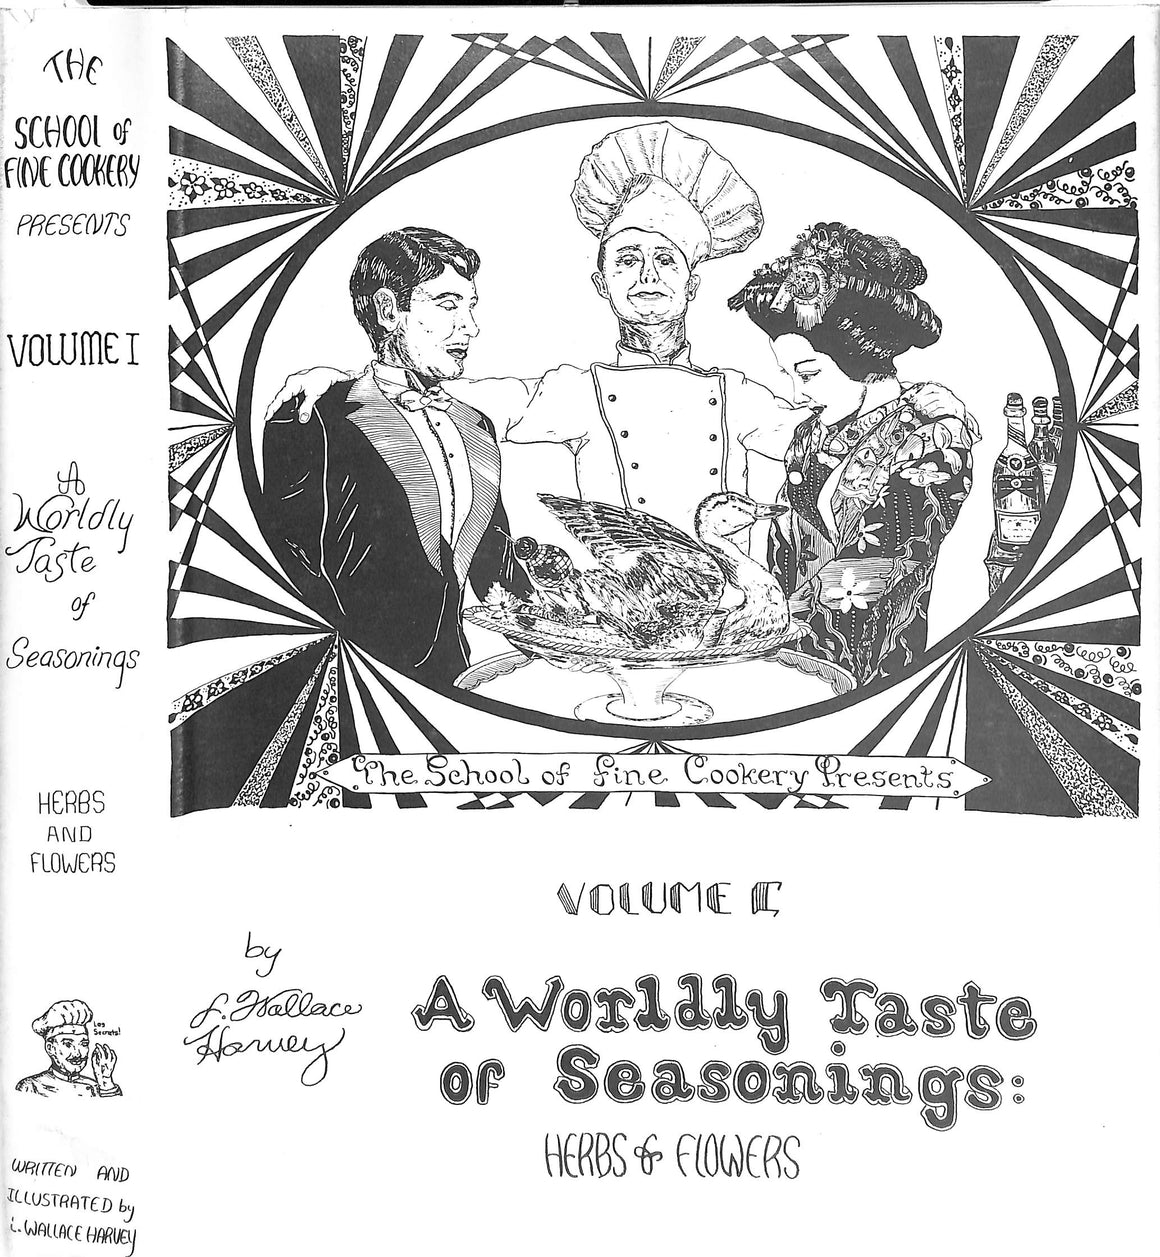 "A Worldly Taste Of Seasonings: Herbs & Flowers - Volume I" 1981 HARVEY, L. Wallace "